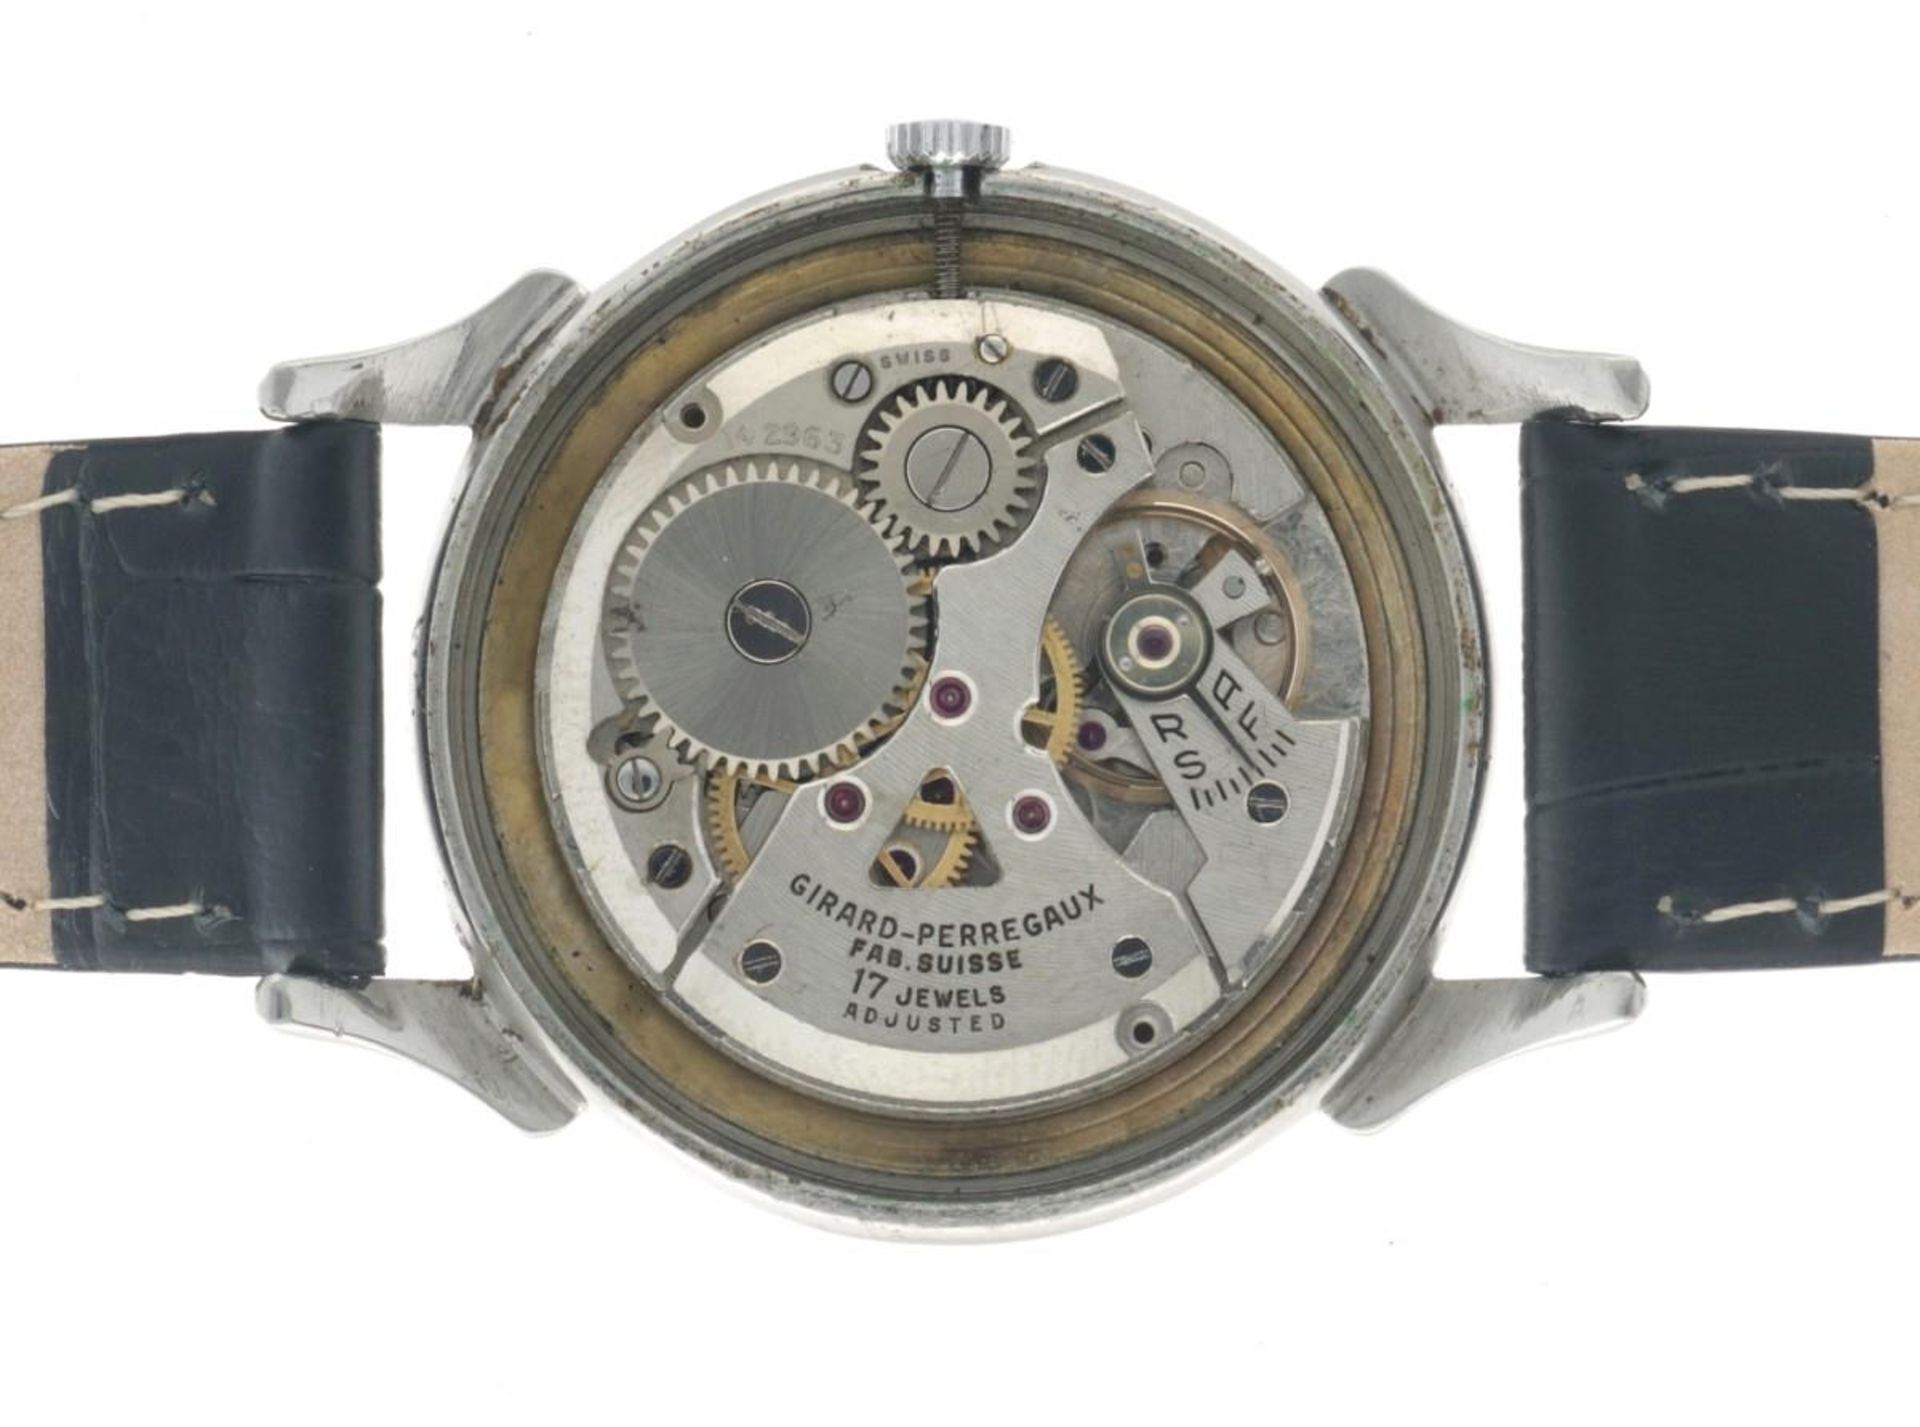 Girard-Perregaux Dogleg 494779 - Men's watch - approx. 1950. - Image 12 of 14